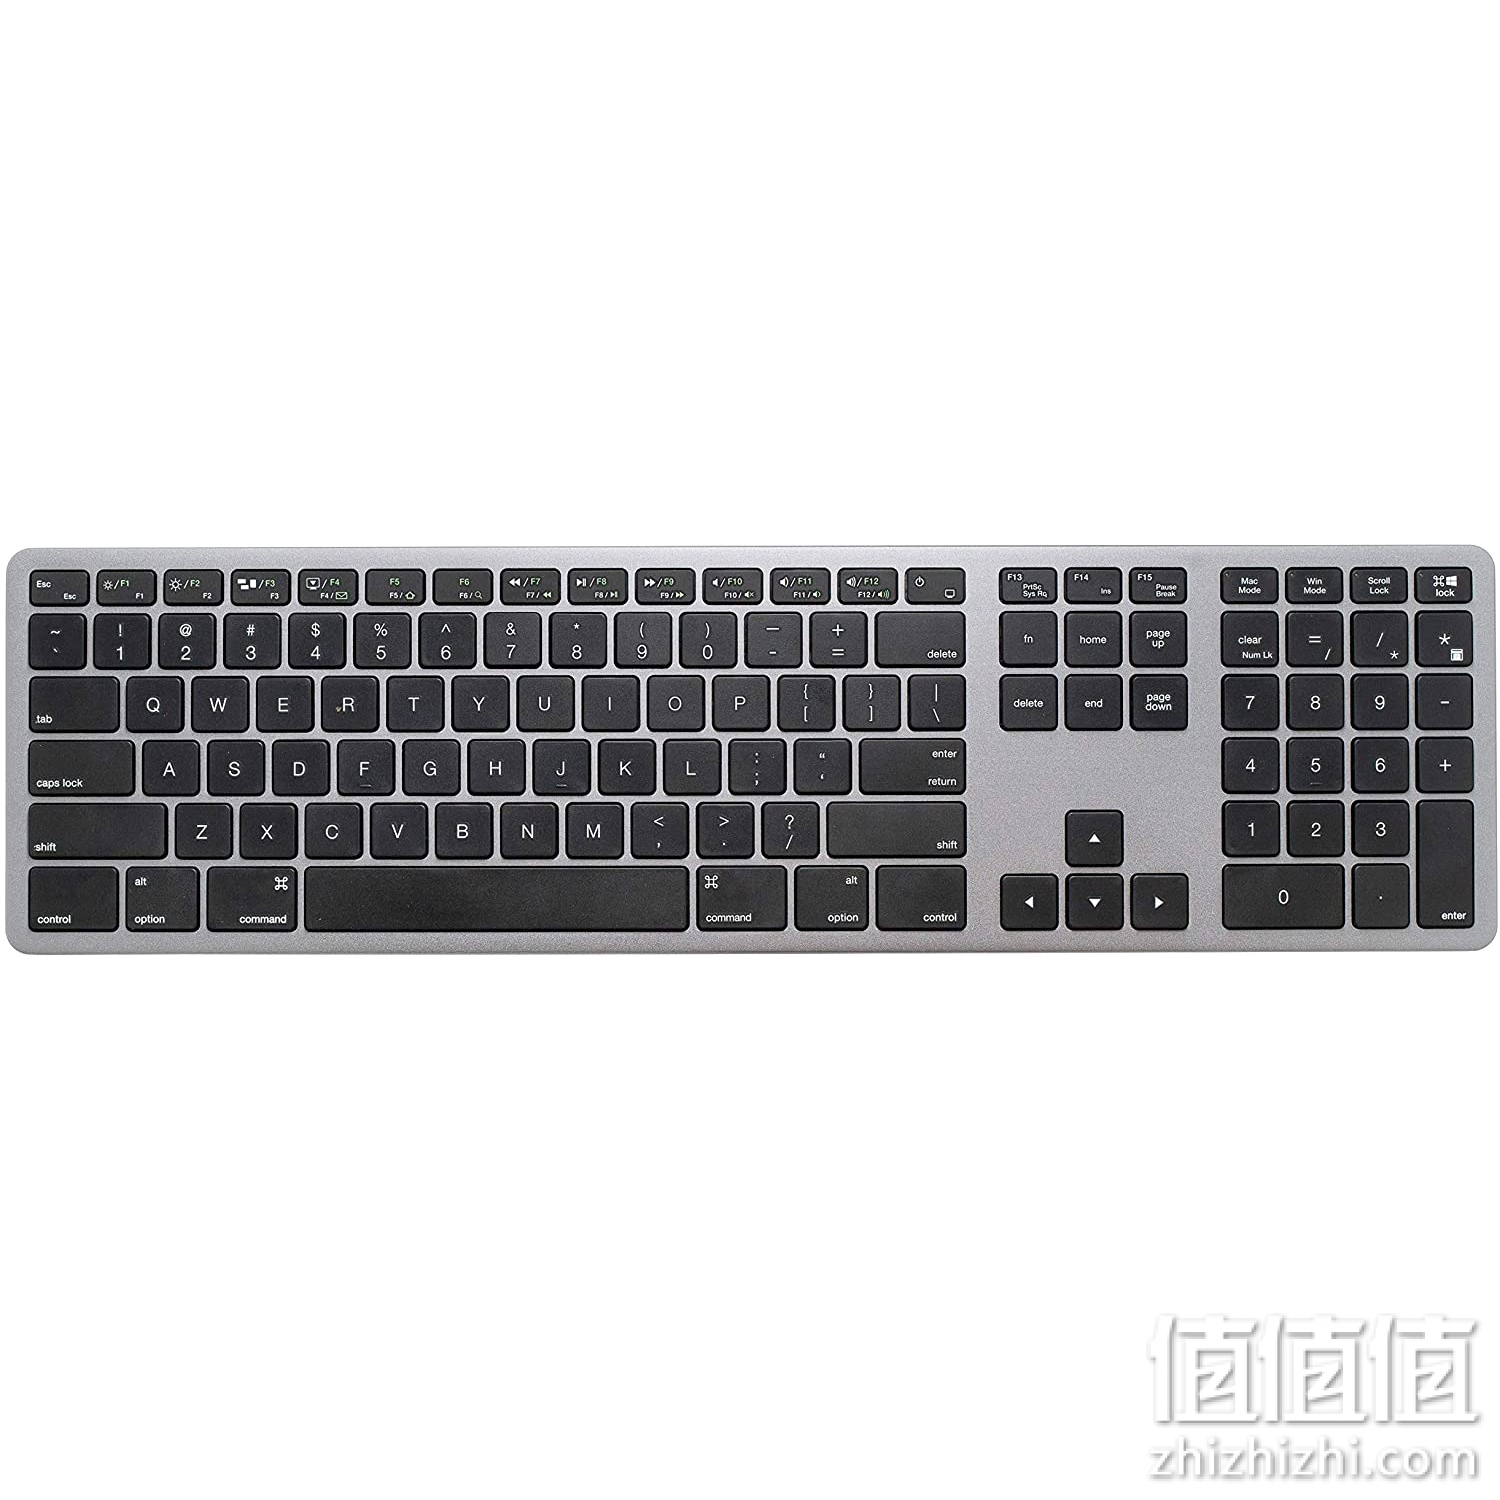 LEXKING Metal X - Mac/Win 双模式铝金属蓝牙无线键盘 带数字键 适用于 Apple Mac Pro、MacBook Pro/Air、iMac、Mac Mini、Windows PC 笔记本电脑，设计太灰色金属壳